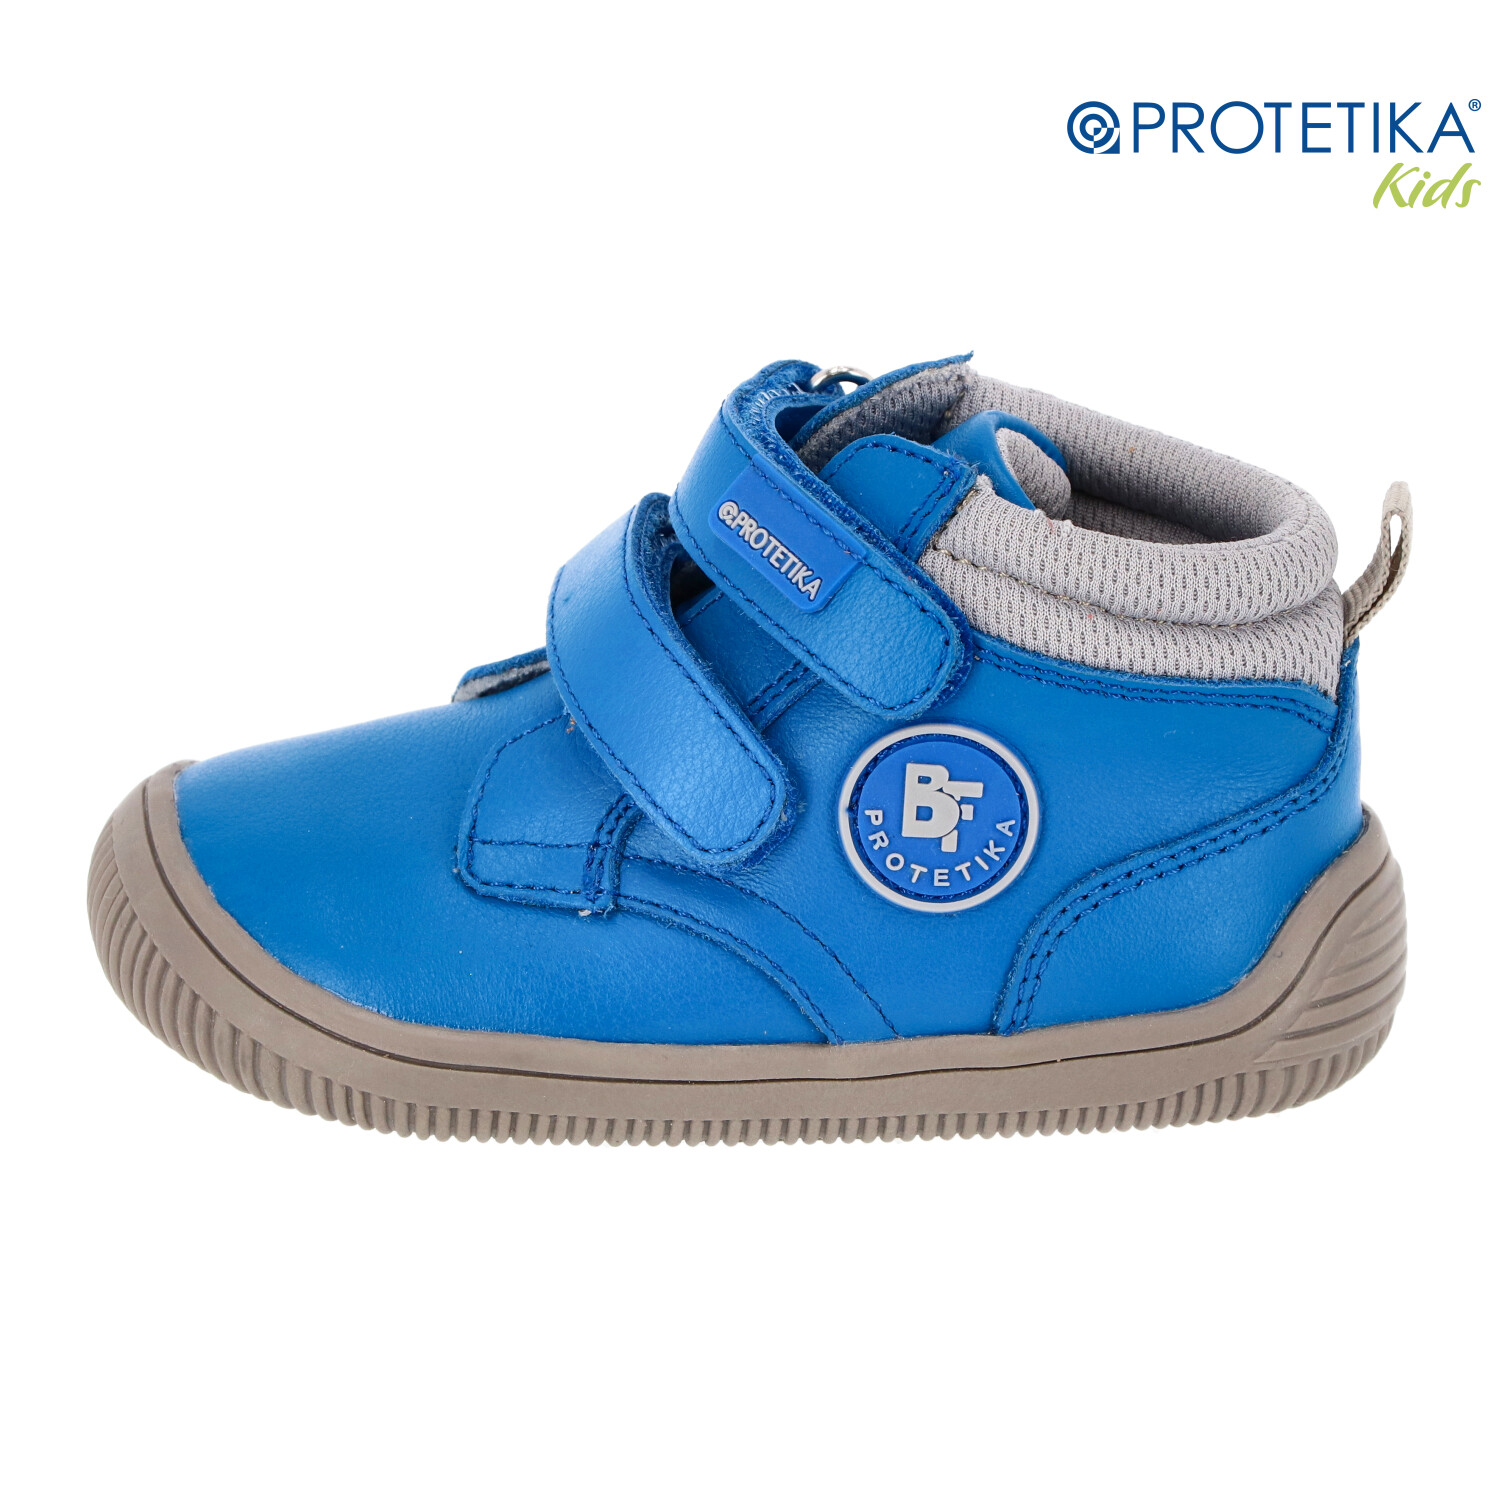 Protetika - barefootové topánky TENDO blue